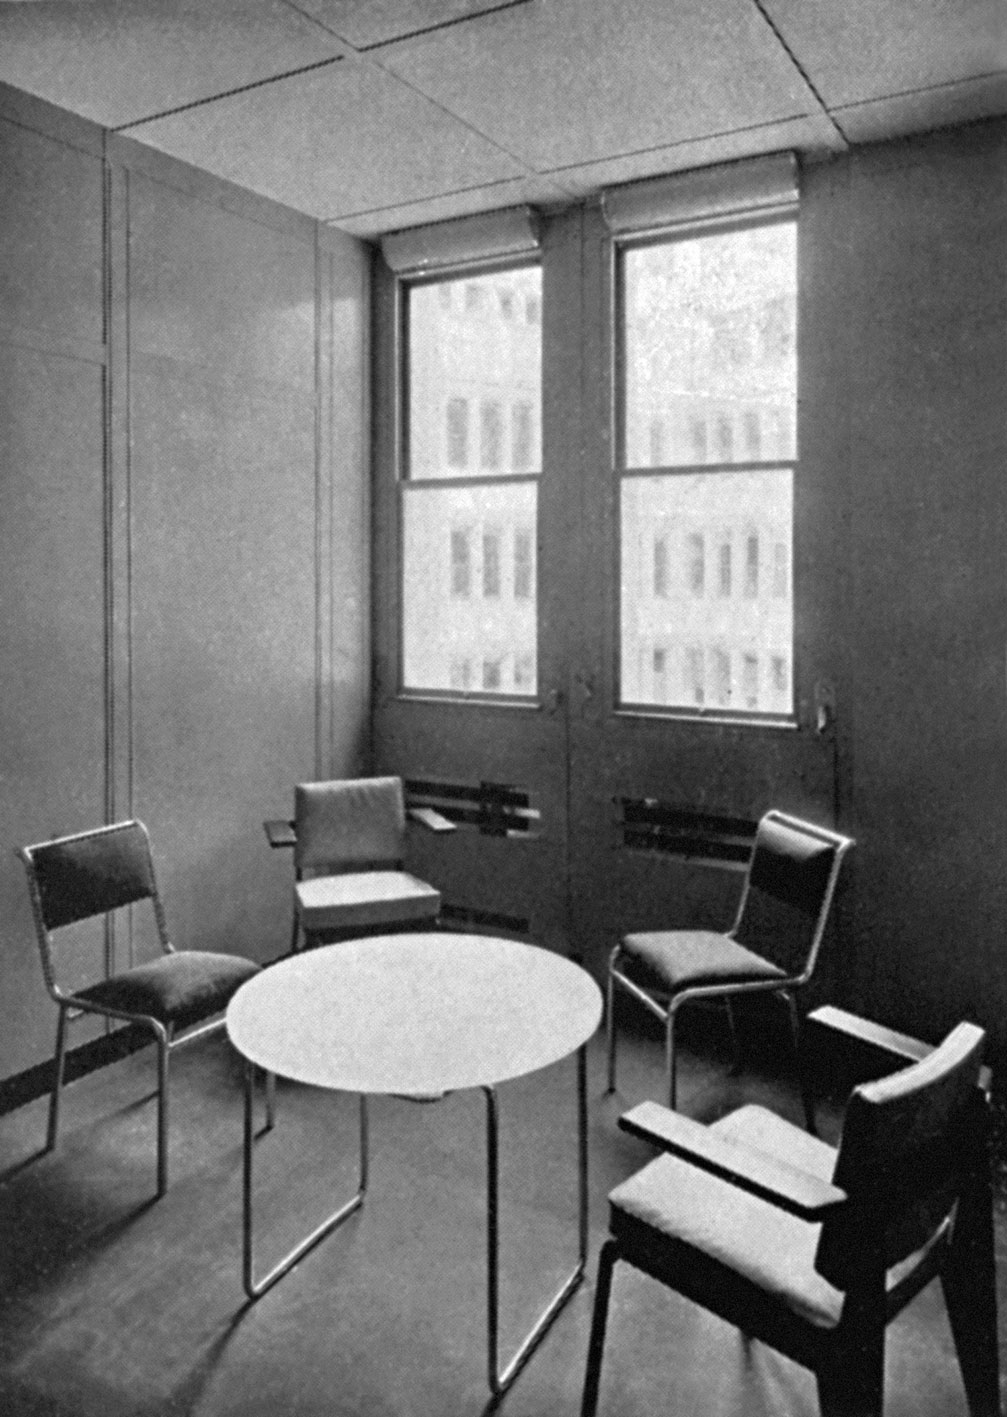 CPDE, Paris (U. Cassan, arch., P. Bey et M. Bovis, décorateurs, 1932-1934). La salle d’attente équipée de deux fauteuils de bureau CPDE, c. 1935.